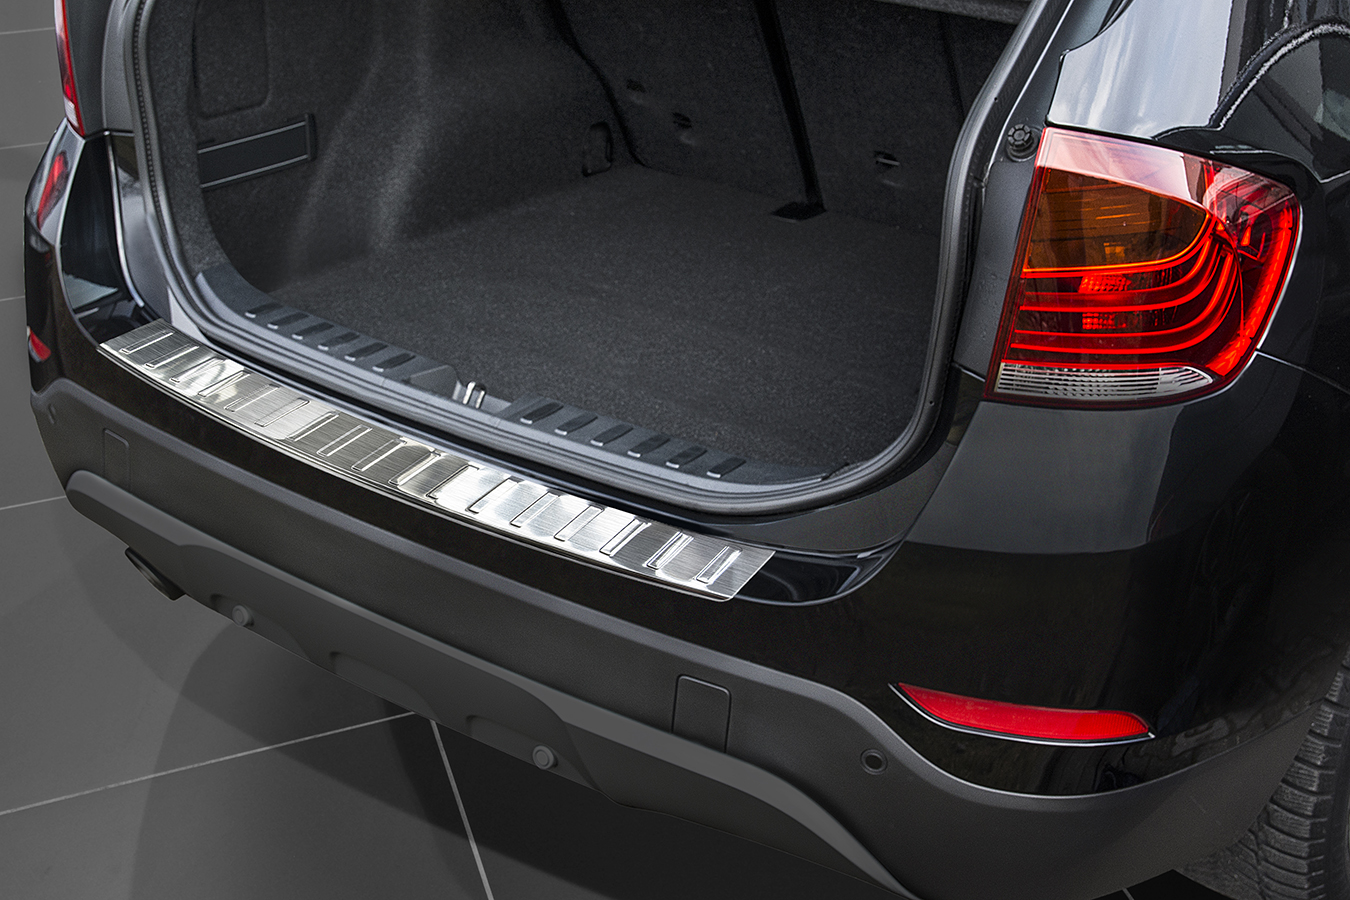 Ladekantenschutz für BMW X1 - Schutz für die Ladekante Ihres Fahrzeuges